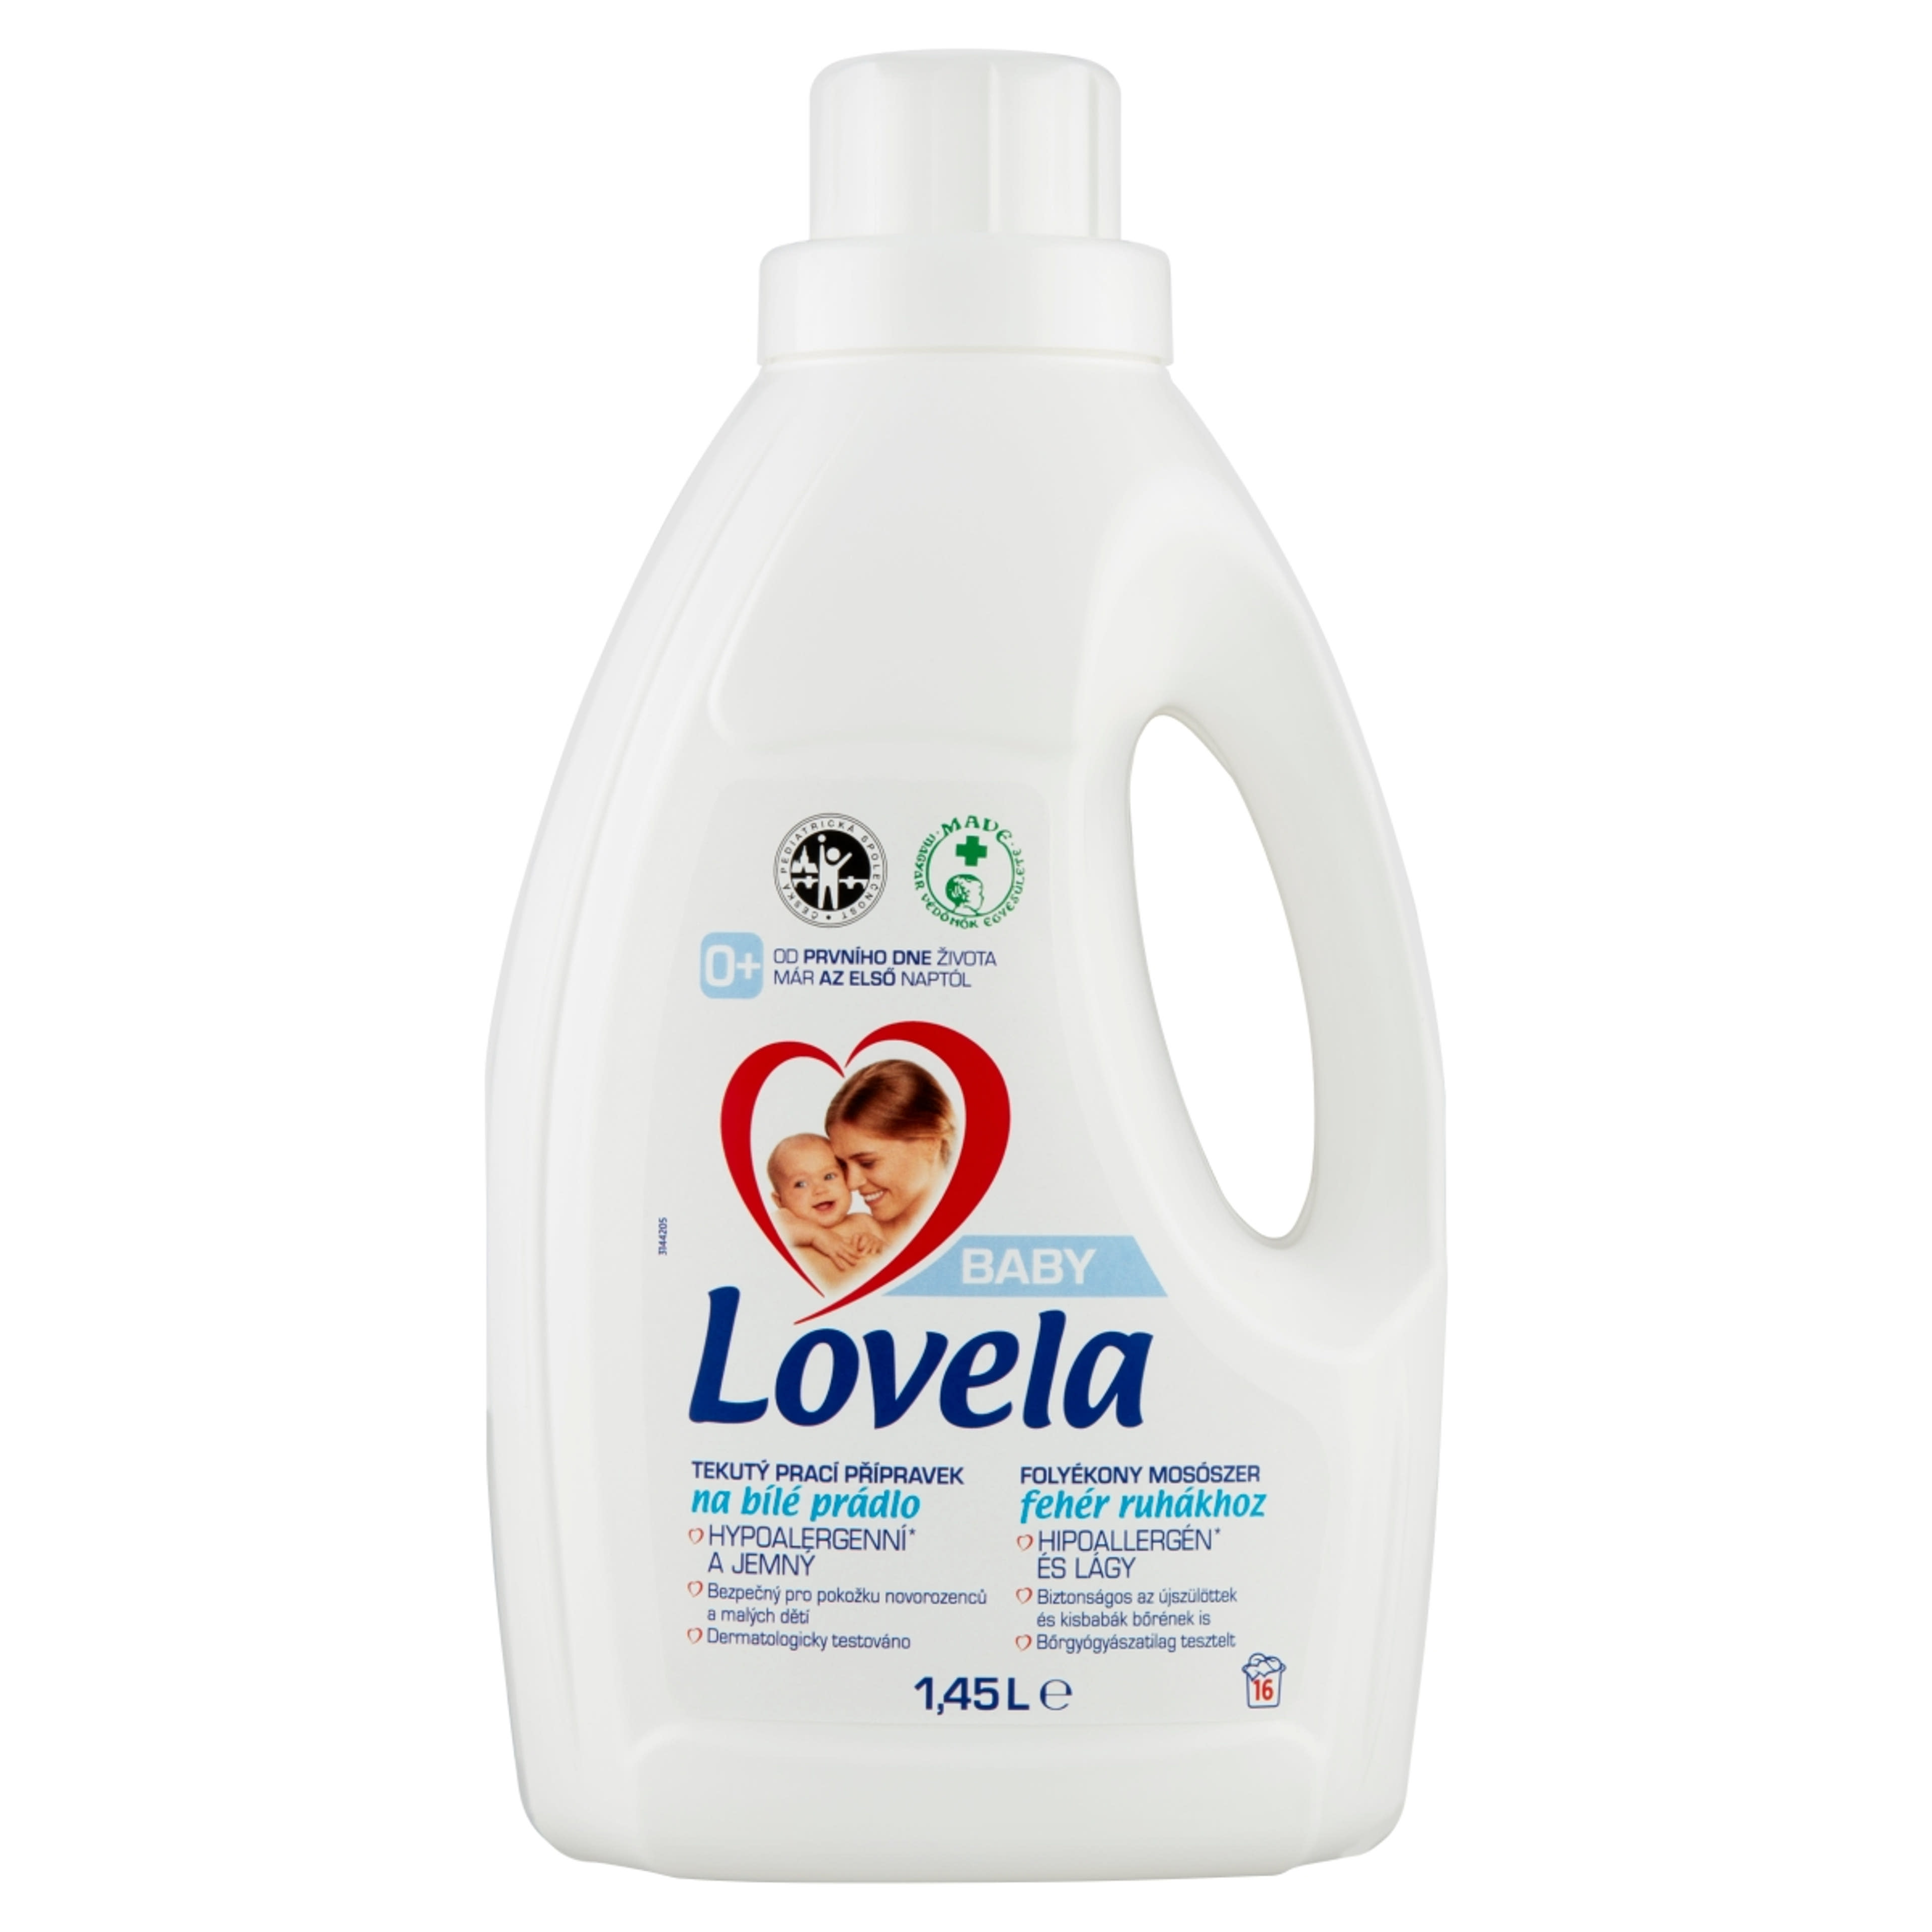 Lovela Baby folyékony mosószer fehér ruhákhoz 16 mosás - 1450 ml-1